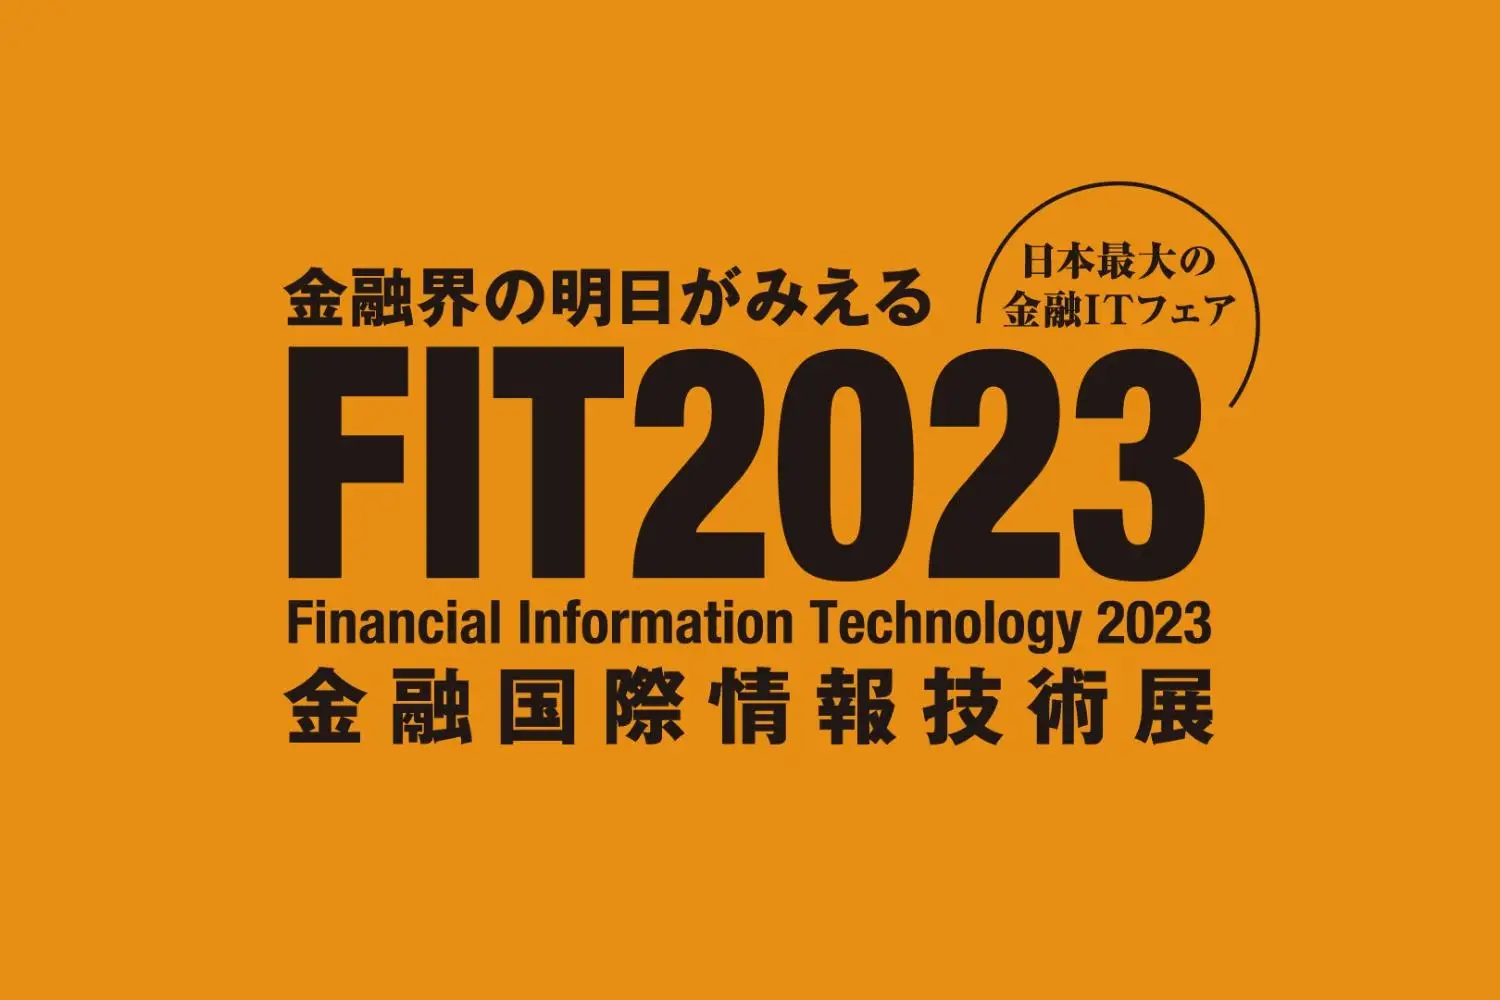 FIT2023金融国際情報技術展